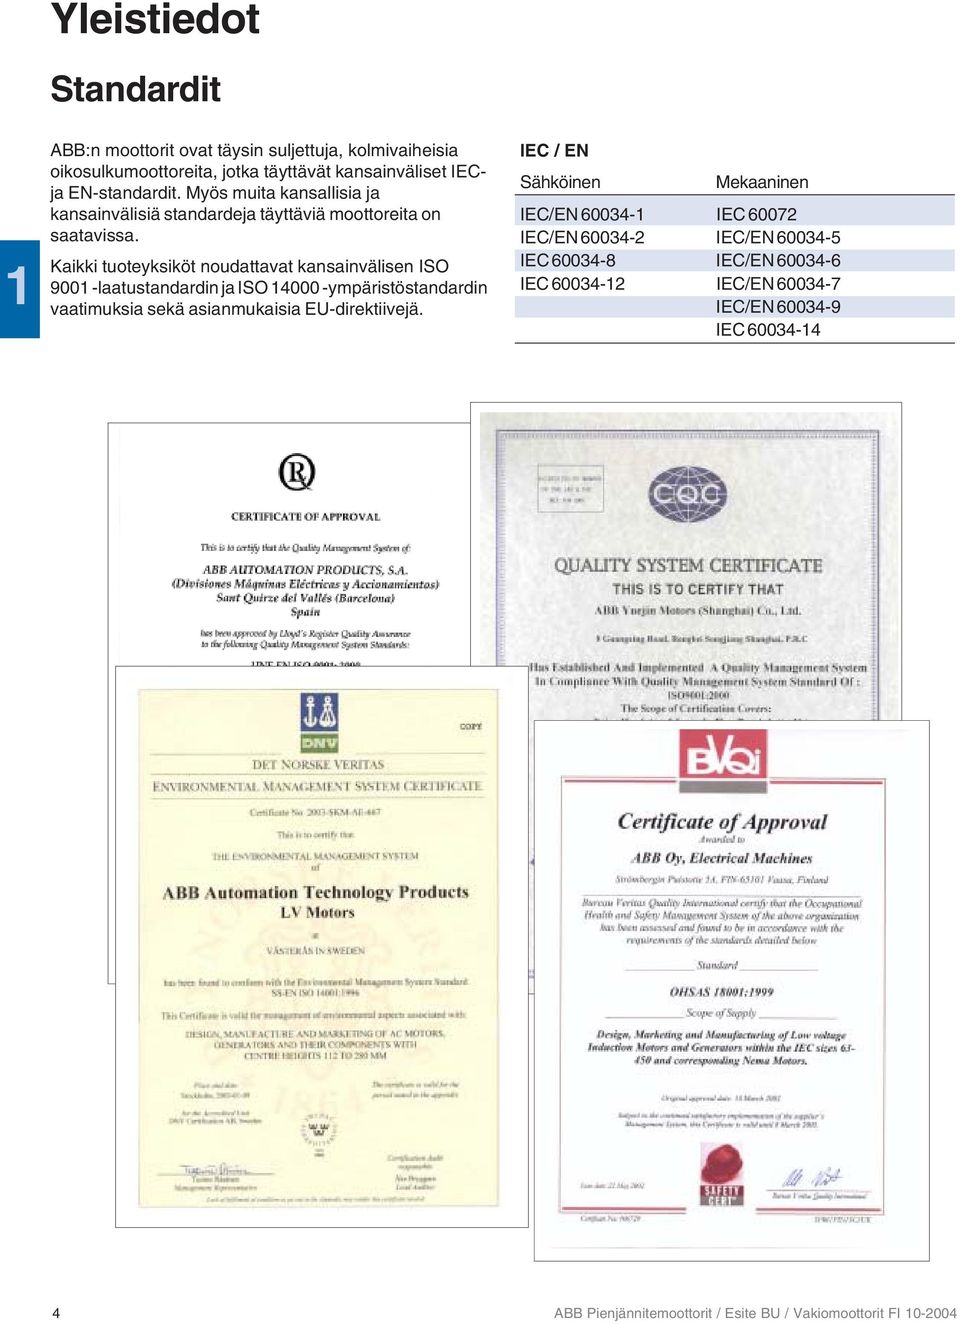 Kaikki tuoteyksiköt noudattavat kansainvälisen ISO 9001 -laatustandardin ja ISO 14000 -ympäristöstandardin vaatimuksia sekä asianmukaisia EU-direktiivejä.